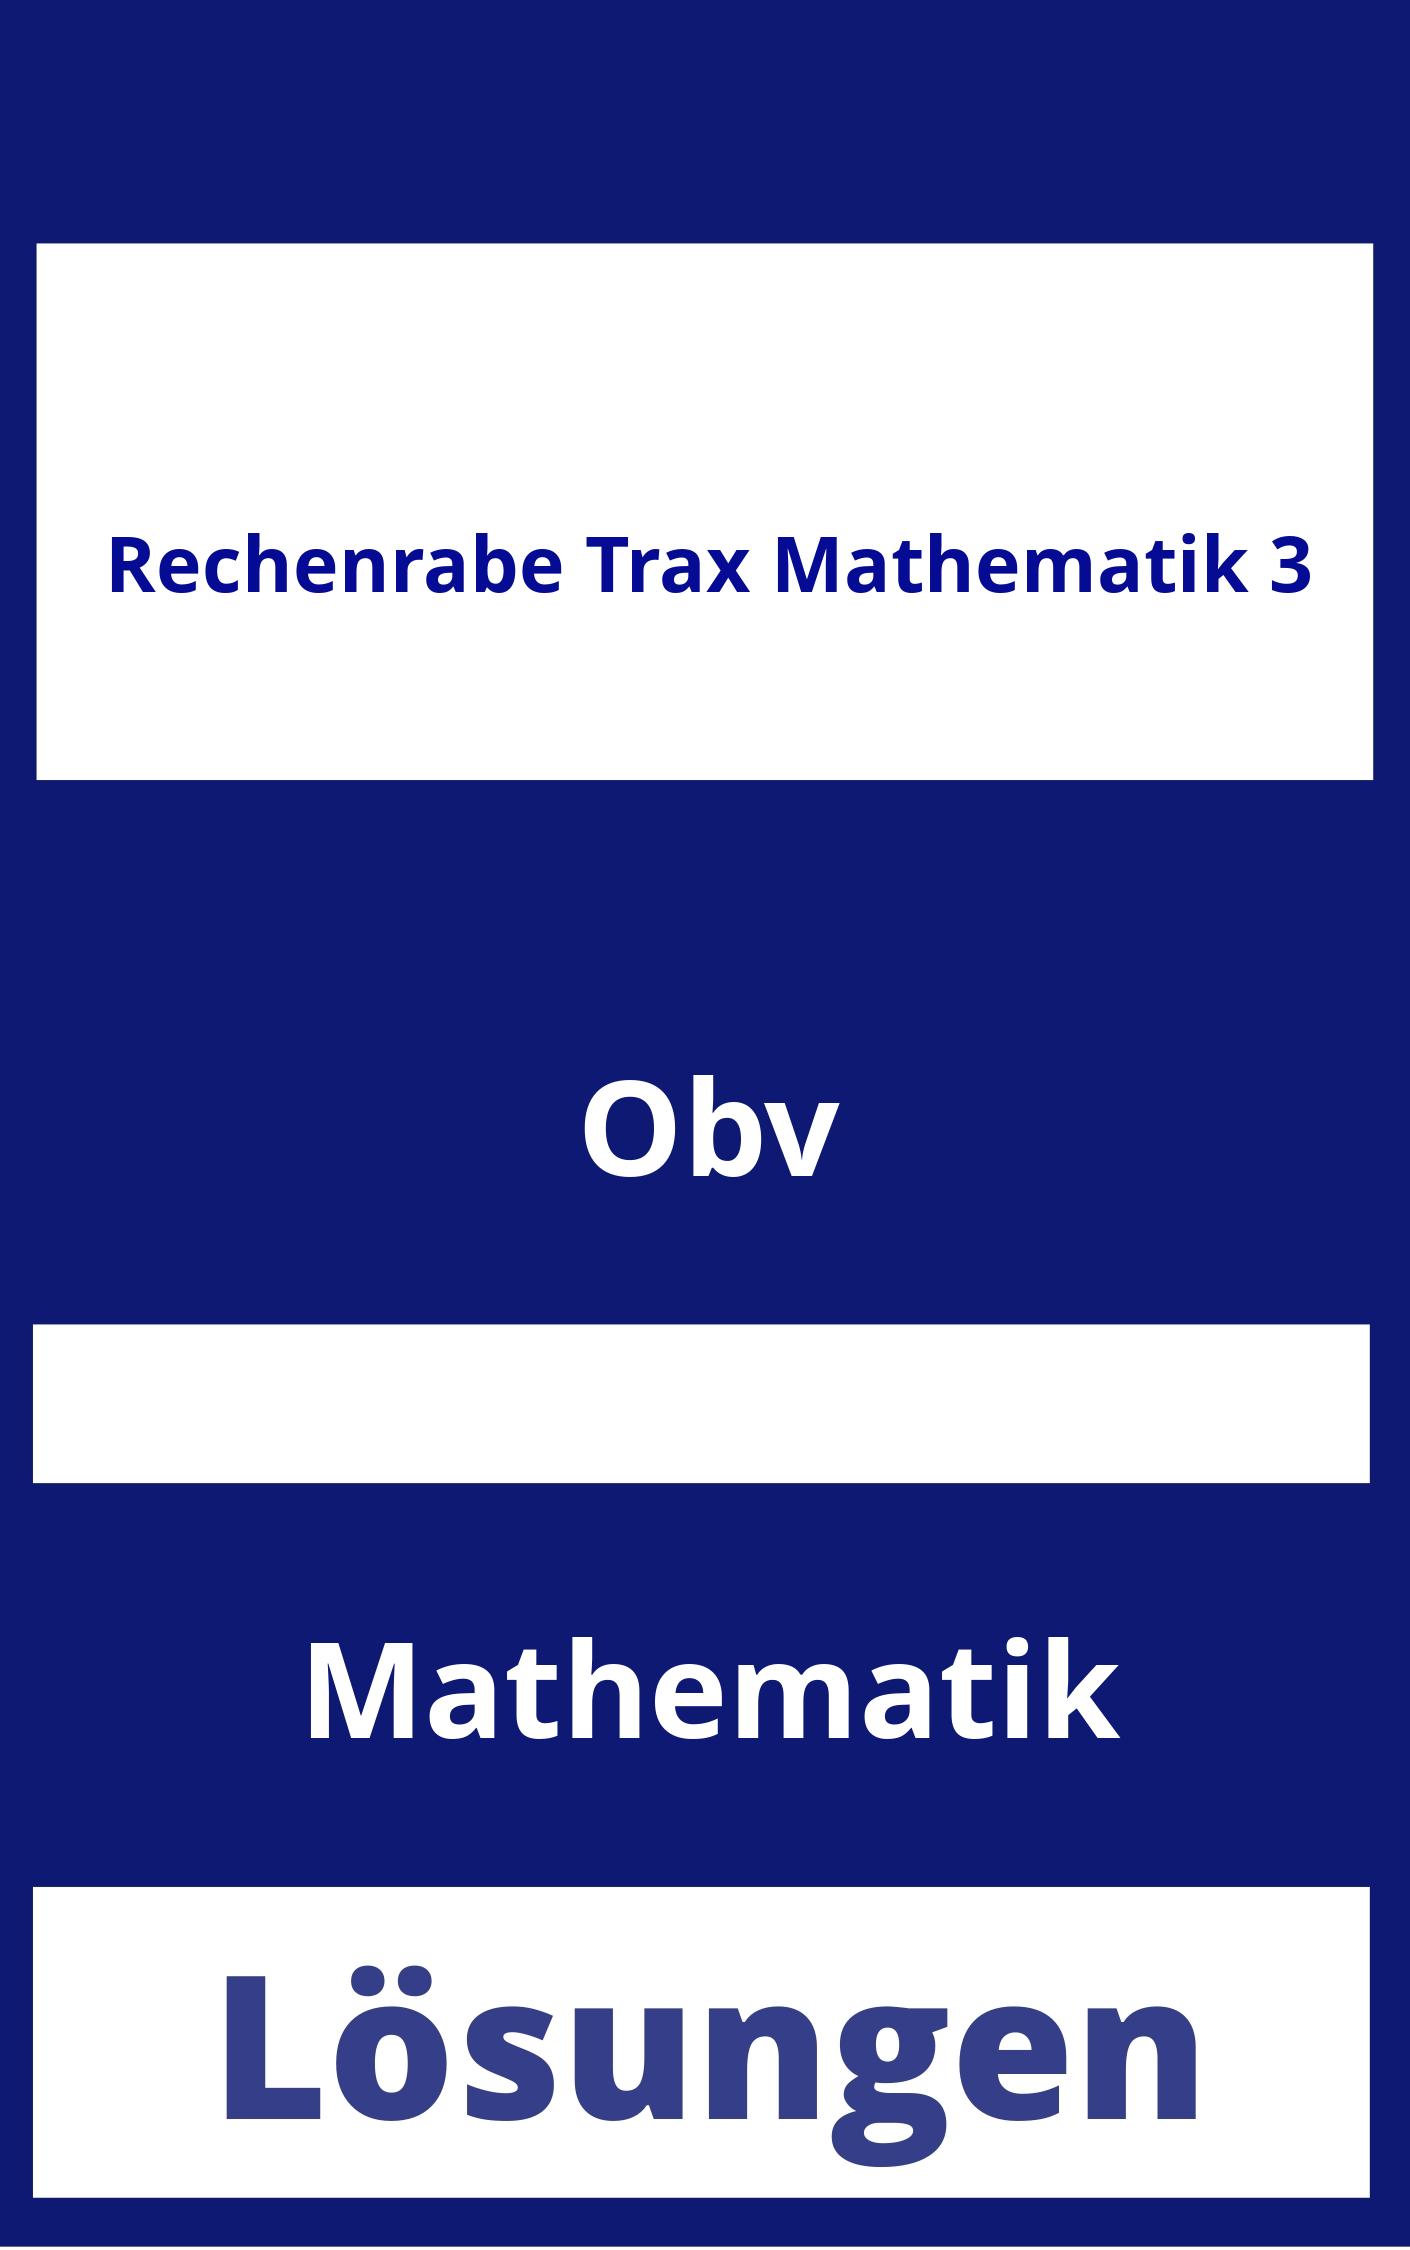 Rechenrabe Trax Mathematik 3 Lösungen PDF